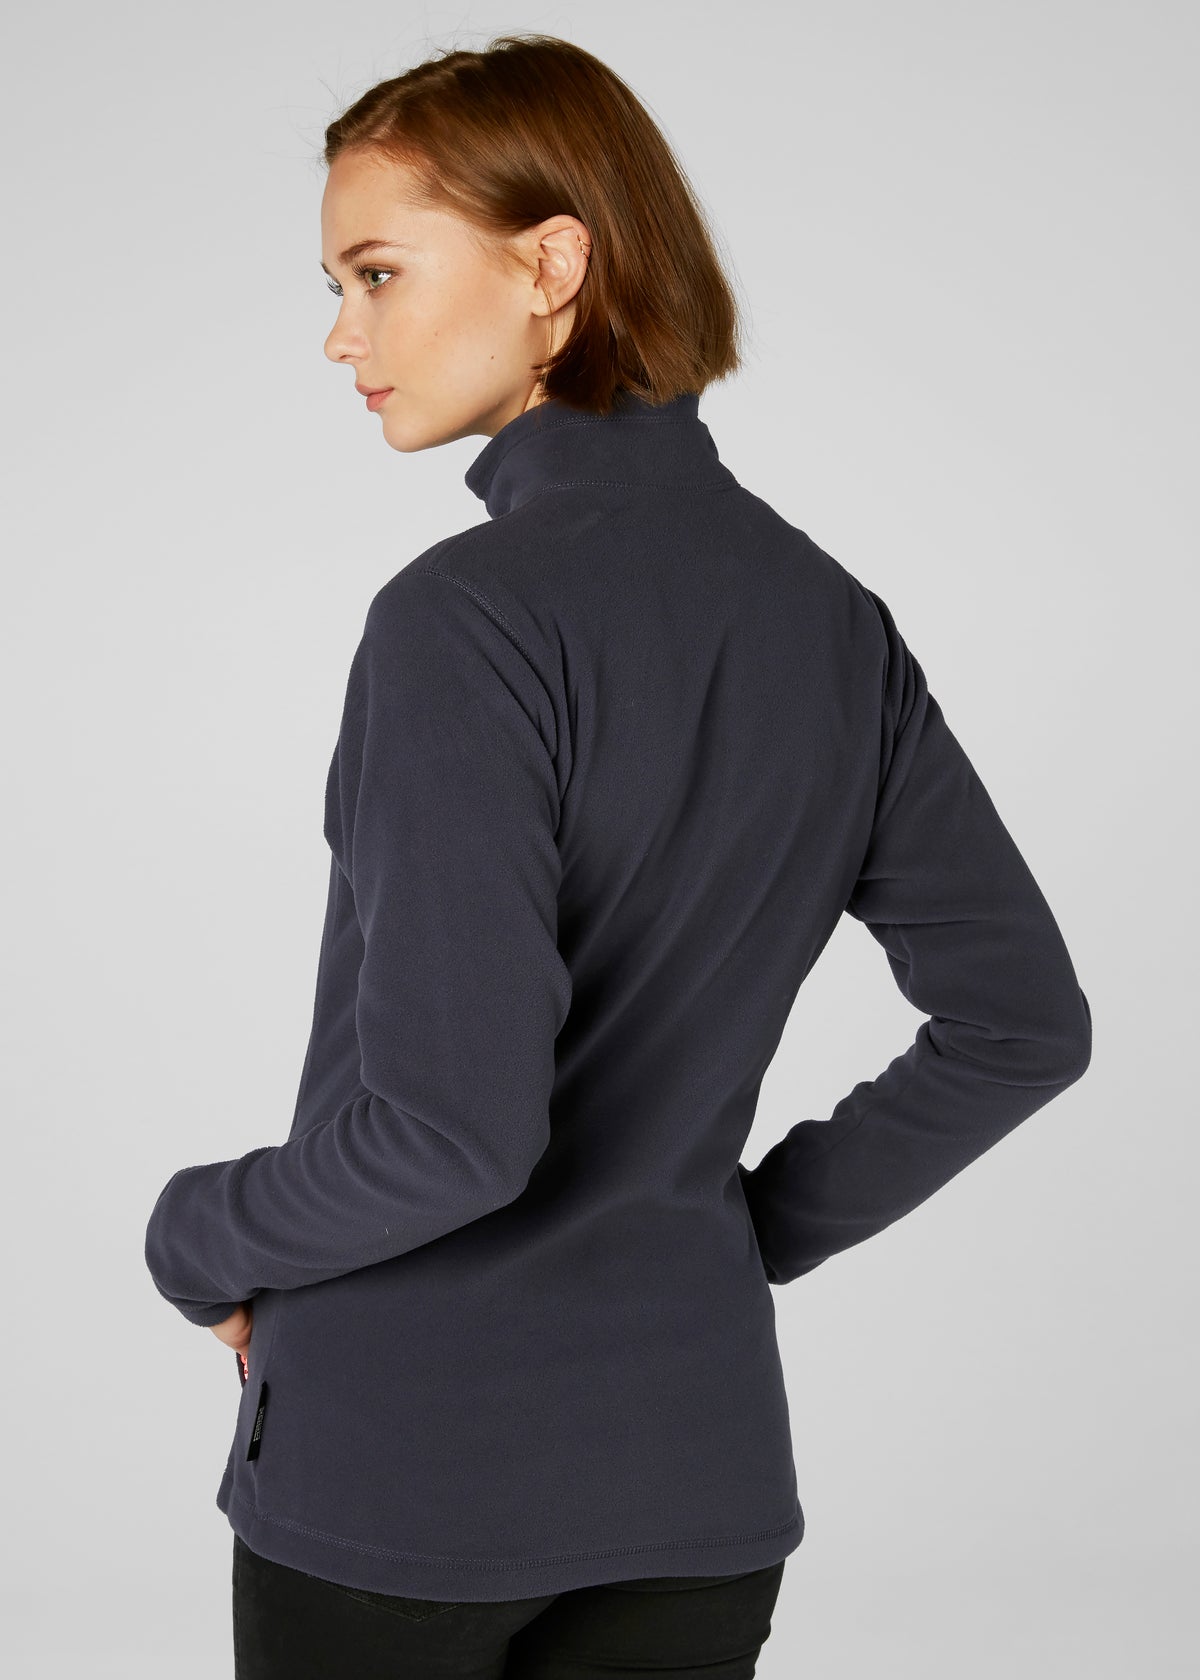 Helly Hansen Daybreaker Fleece Jacket - Women's